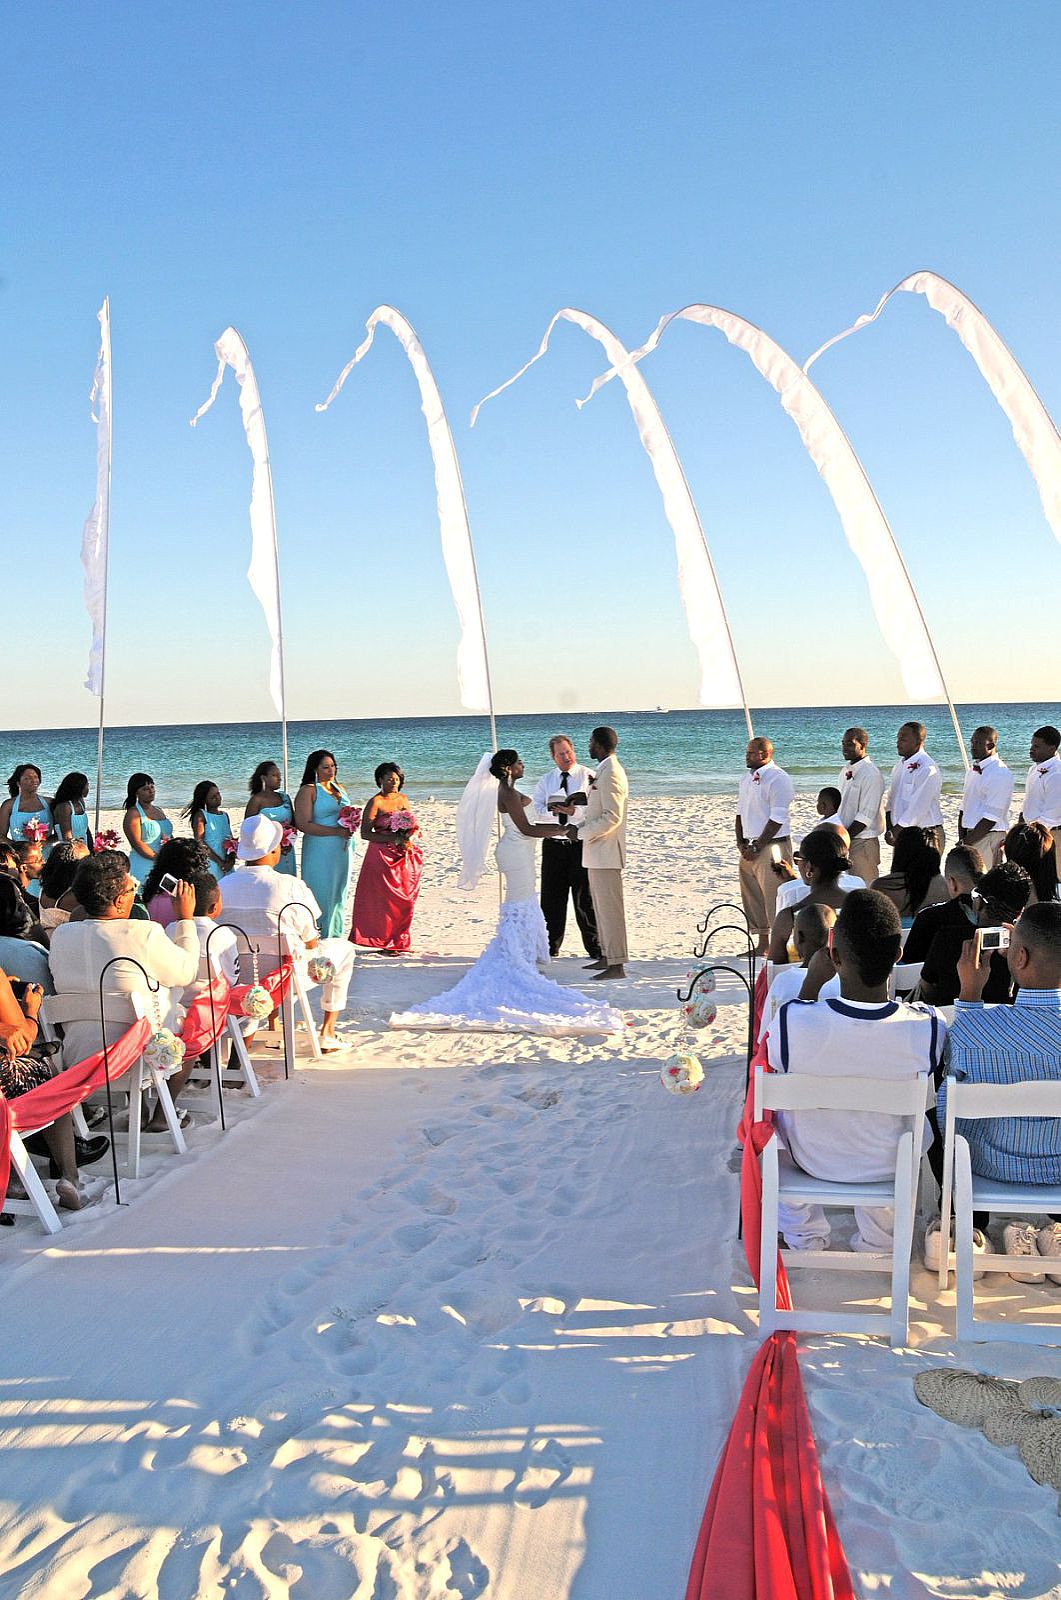 https://prwedding.com/wp-content/uploads/2011/12/bali-flags-destin-beach-wedding.jpg